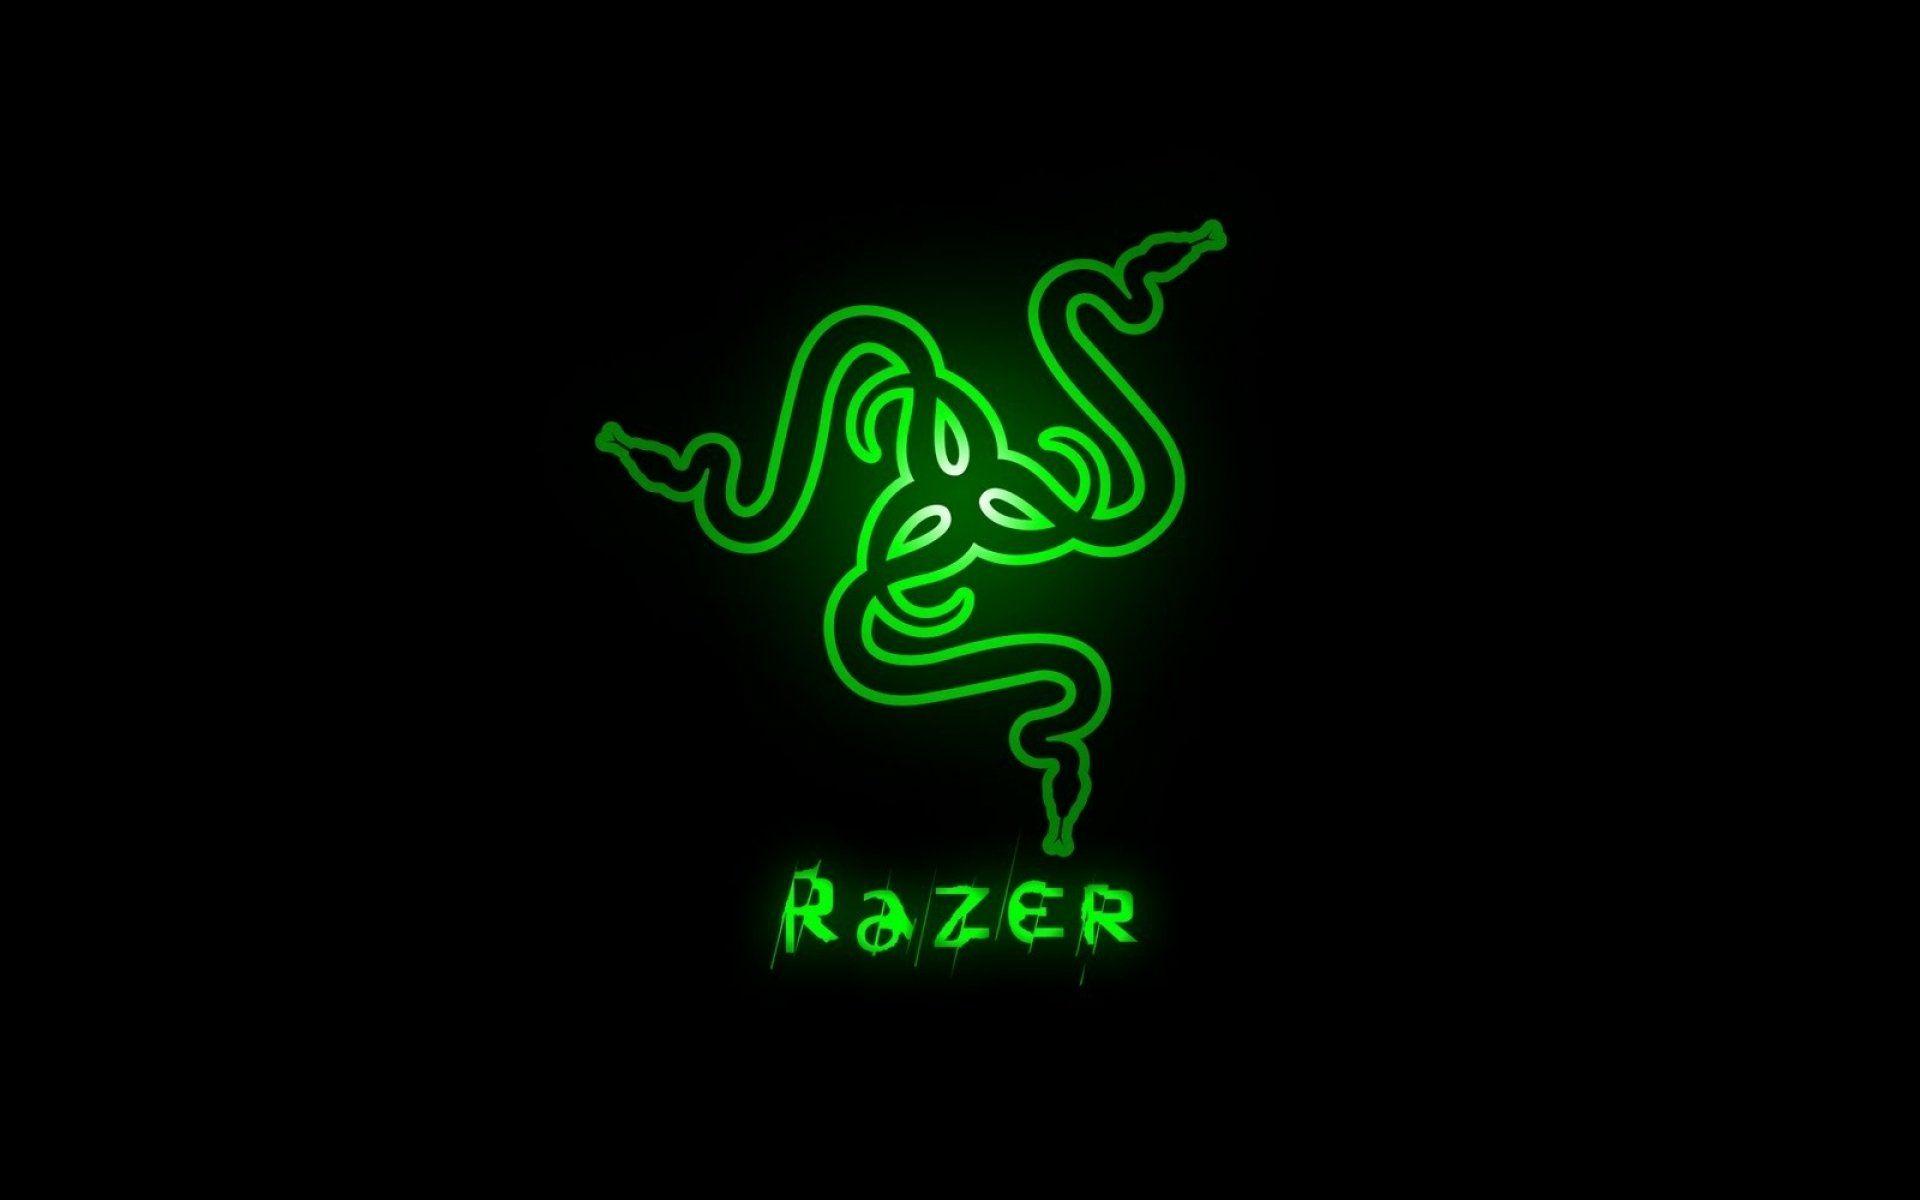 Razer Gaming Wallpaper Free Razer Gaming Background